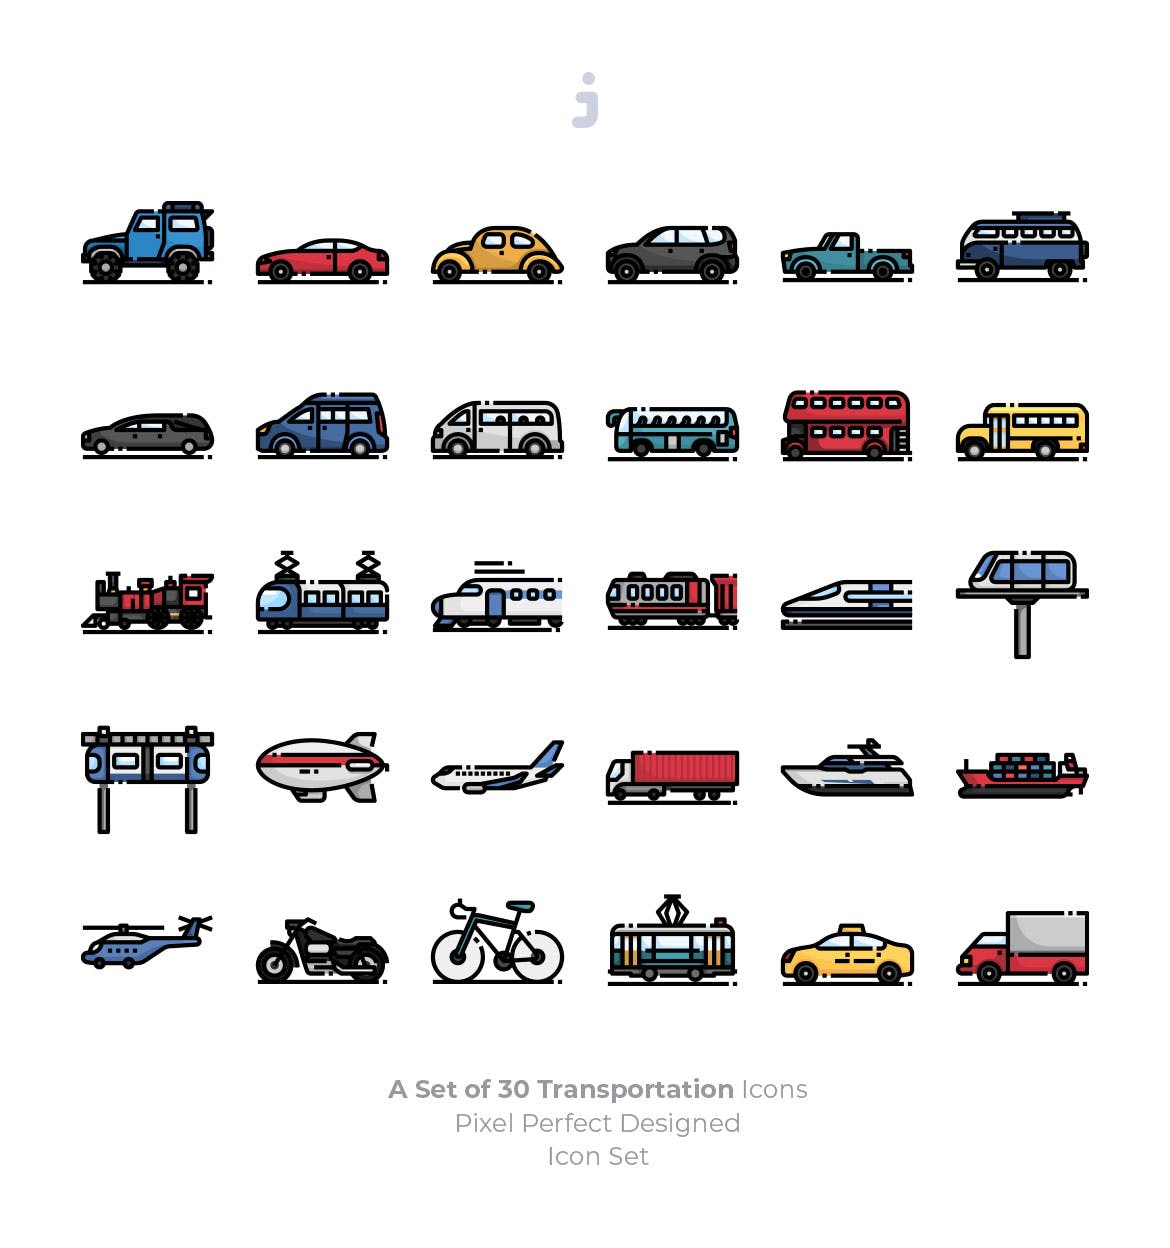 30枚现代交通工具矢量第一素材精选图标 30 Transportation Icons插图(1)